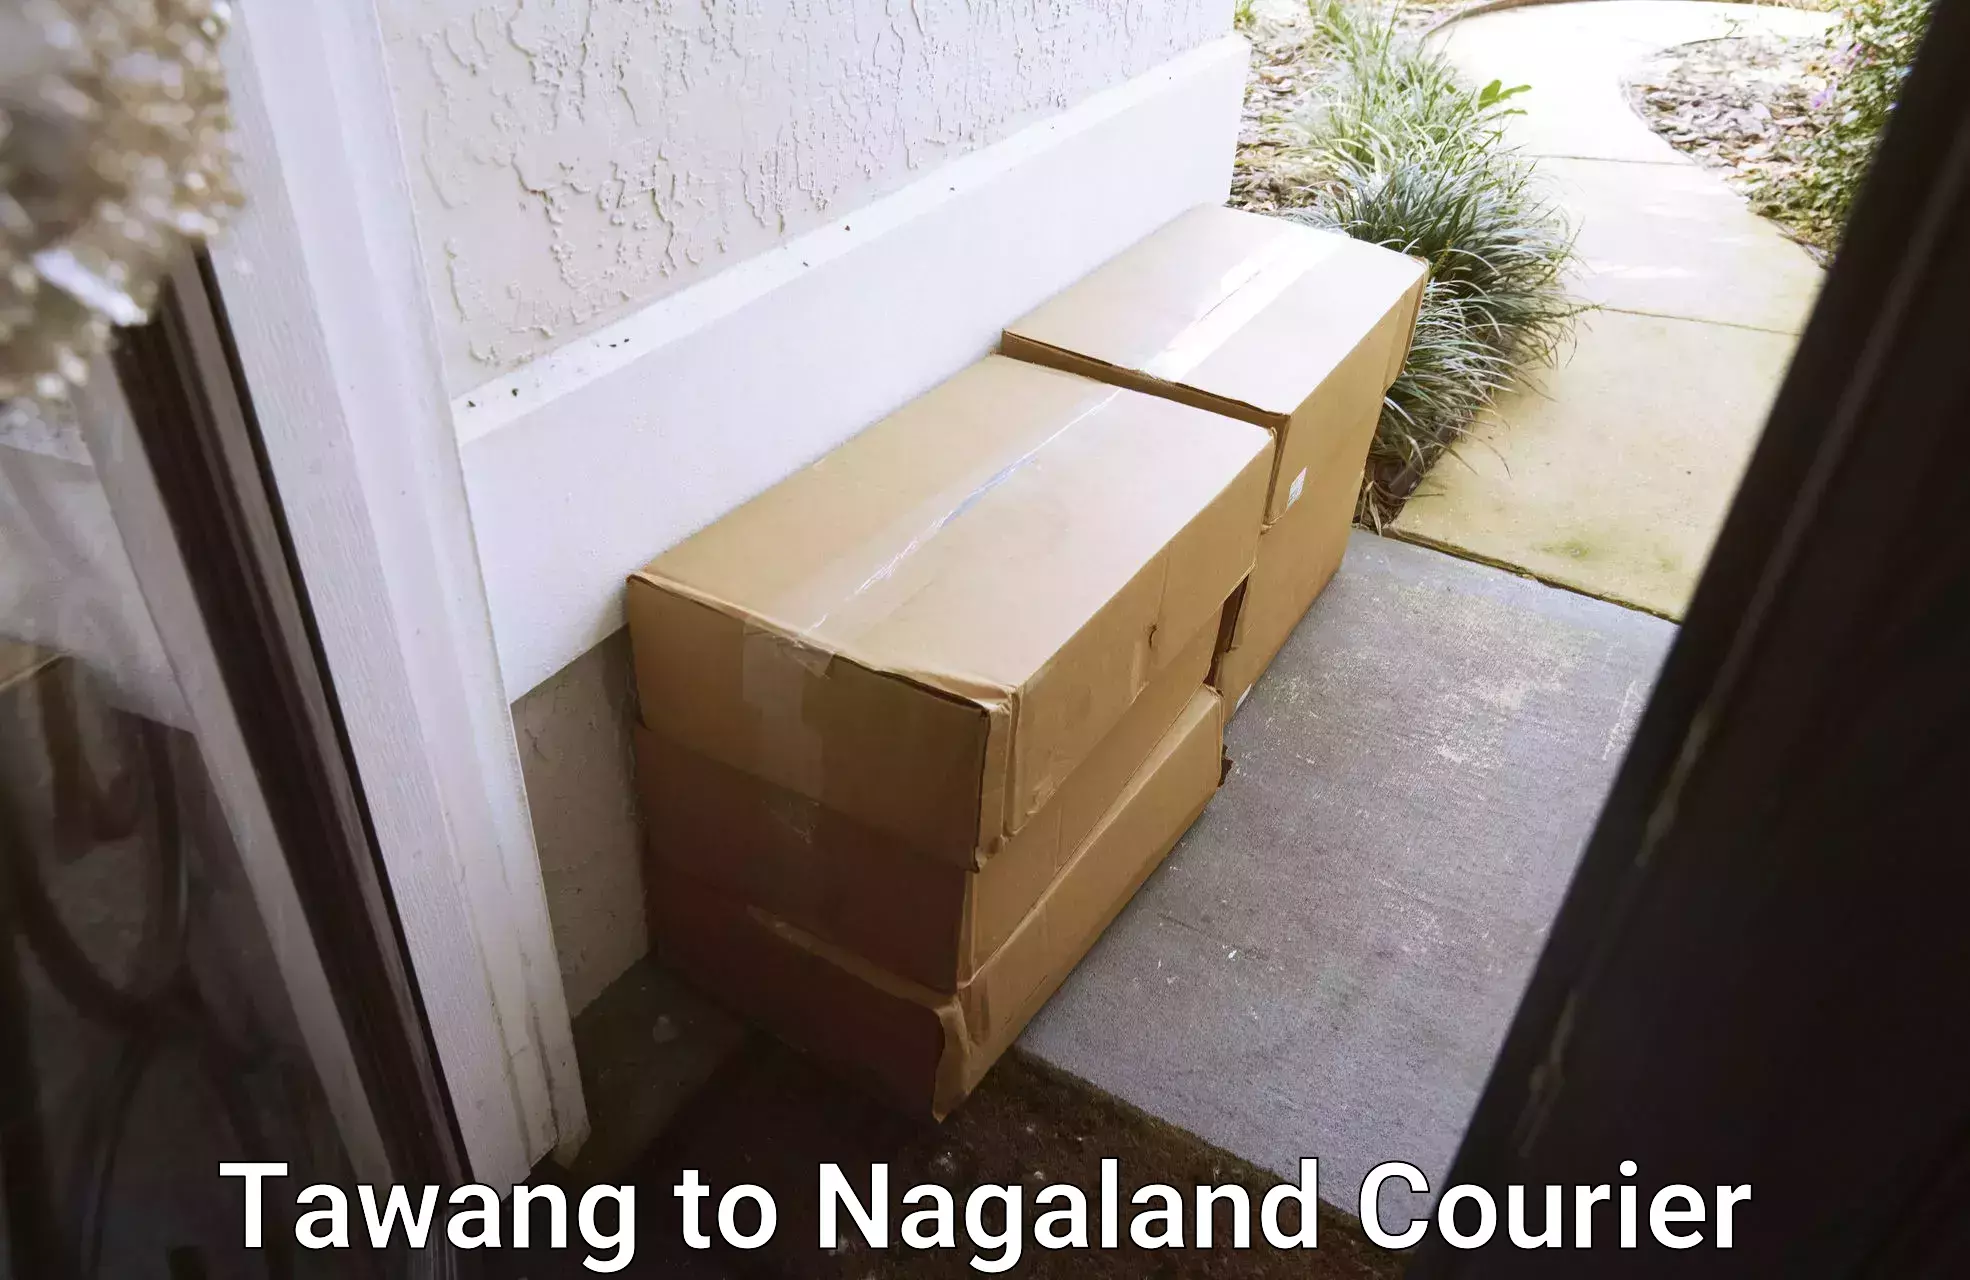 Medical delivery services Tawang to Nagaland